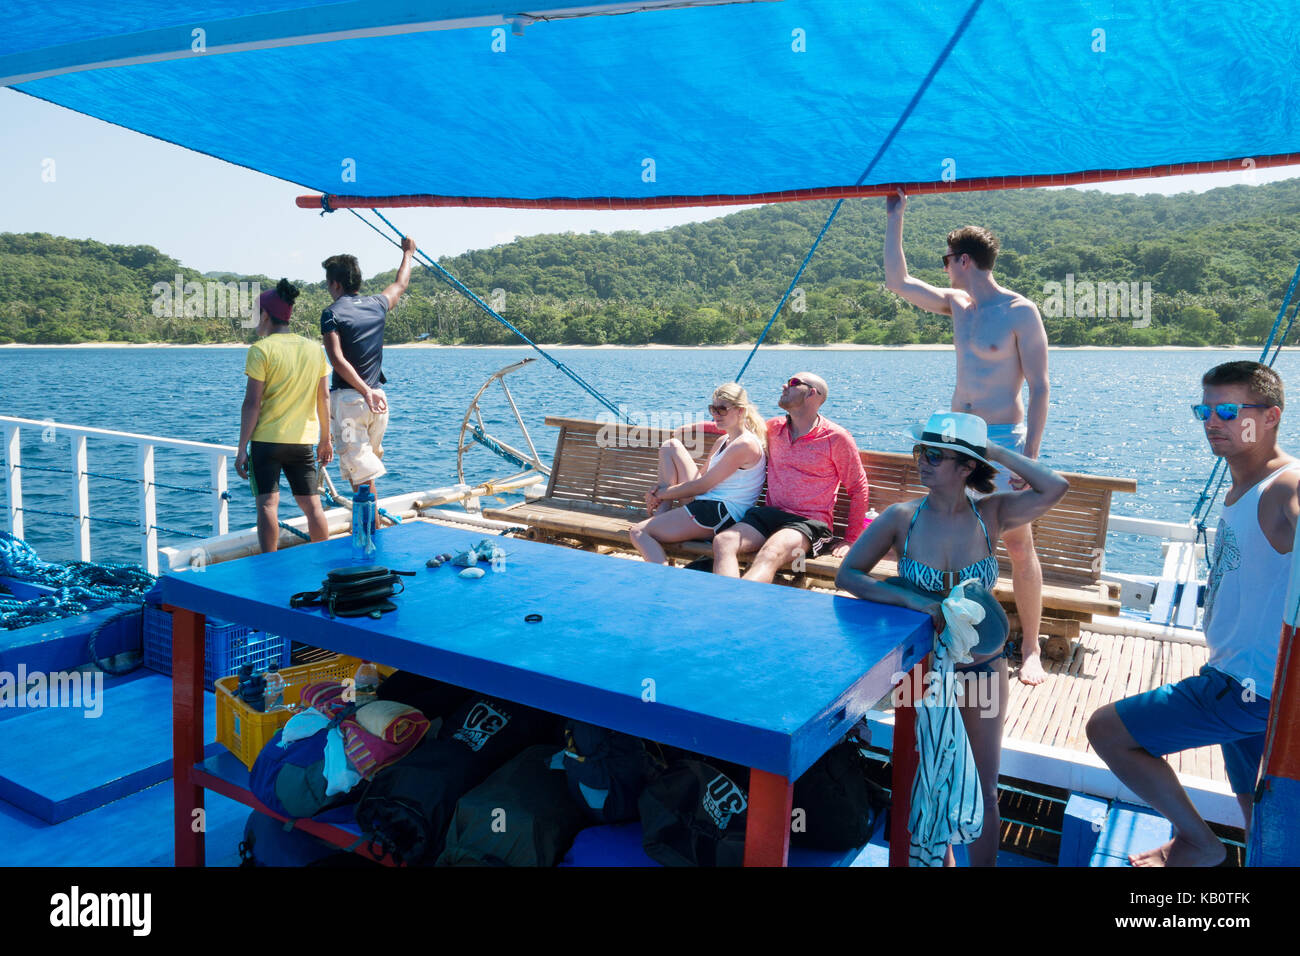 Philippinen Urlaub - westliche Touristen auf einem Schiff zwischen den Inseln reisen, Provinz Palawan, Philippinen Stockfoto